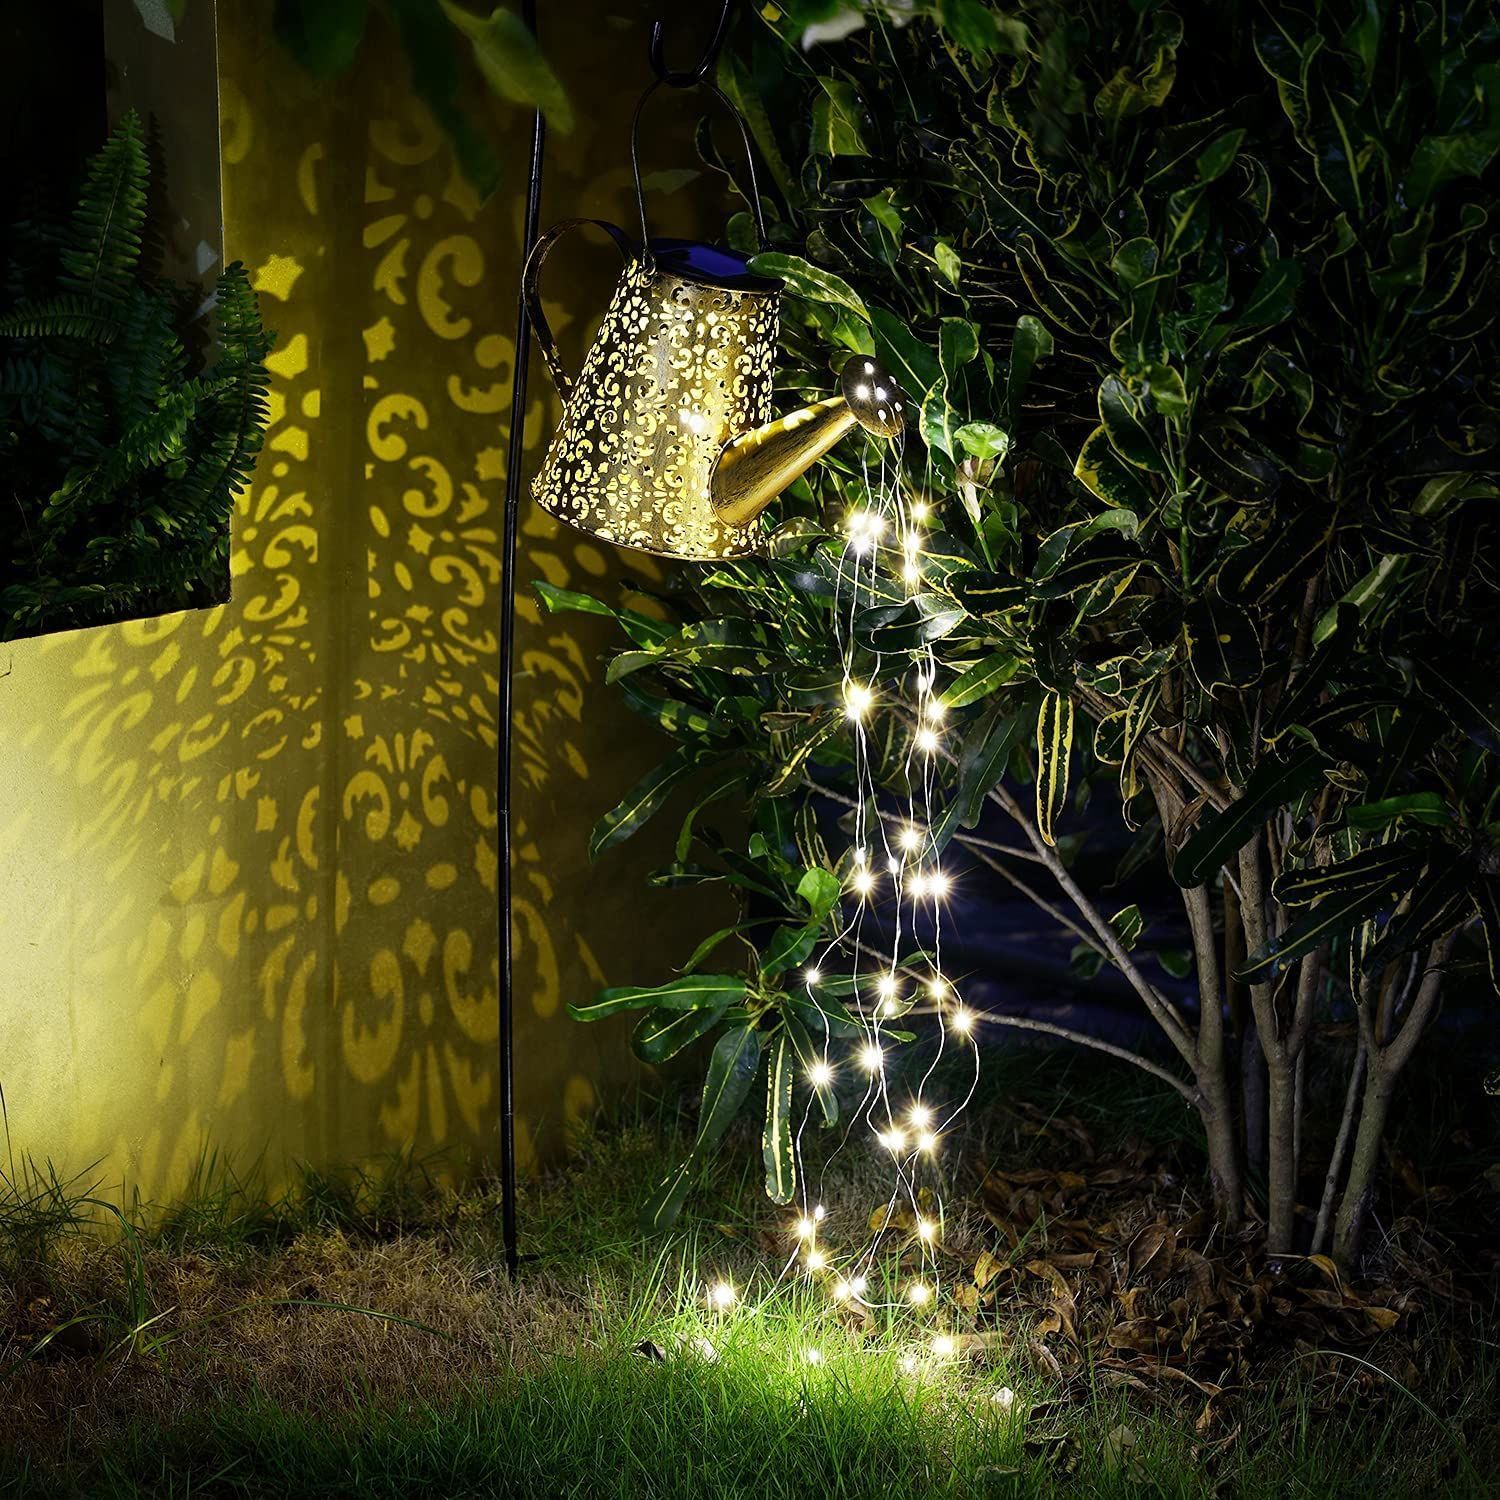 取り付け簡単 配線不要 自動点灯消灯 光センサー IP65防水防塵 太陽光パネル (ケトルライト) ちらつく流れる水の効果 LEDライト 置物ライト  飾りライト 飾りライト 庭園灯 じょうろ型 埋め込み式 屋外 ガーデンライト ソーラーライト ArilAril メルカリShops